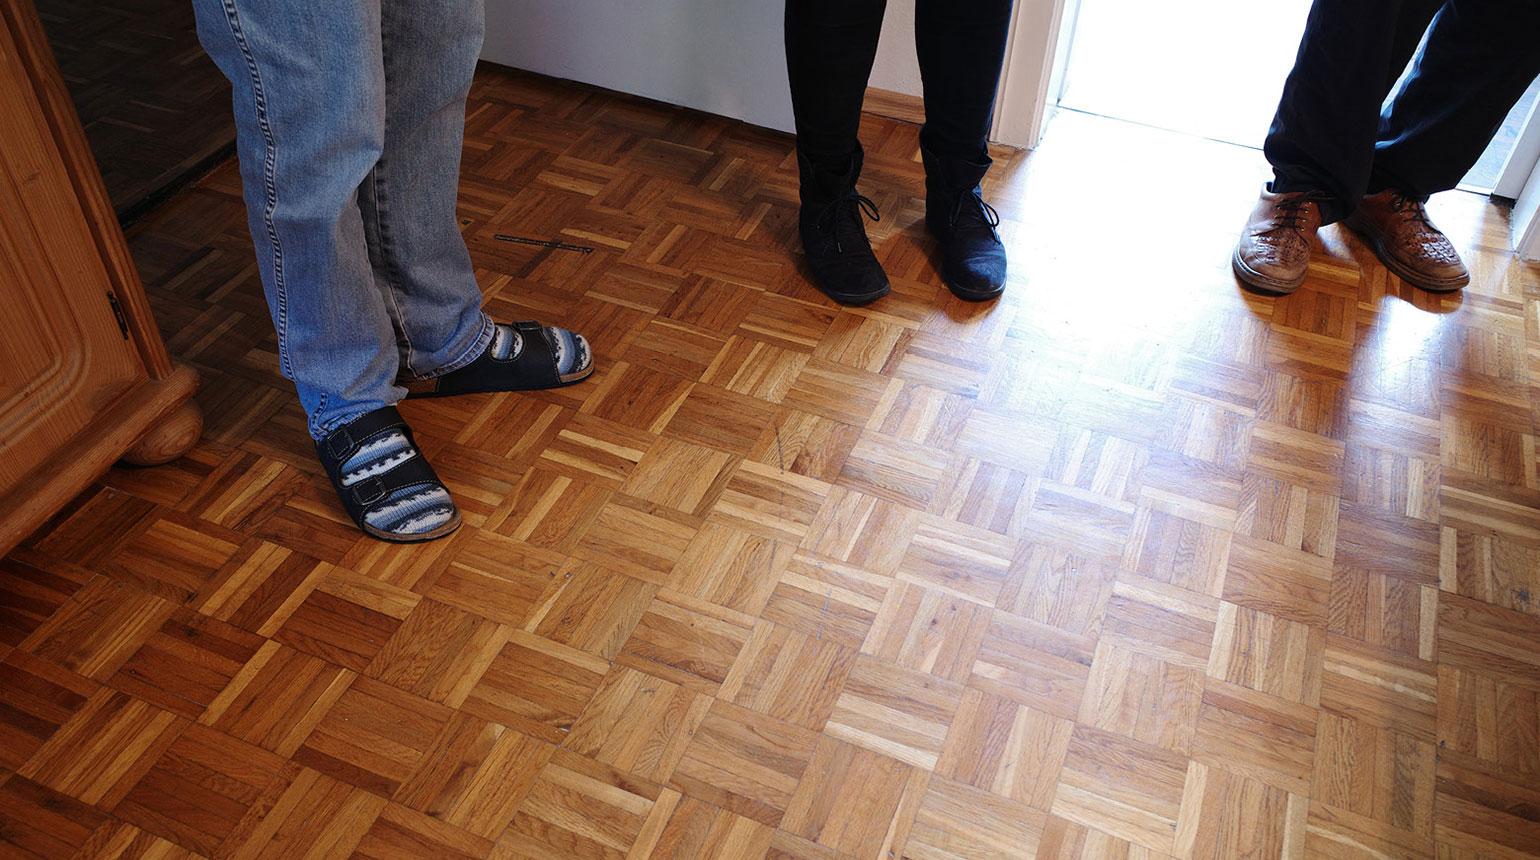 Detailaufnahme: die Füße von drei Menschen, die in einem Raum mit Holzboden im Halbrund stehen.  